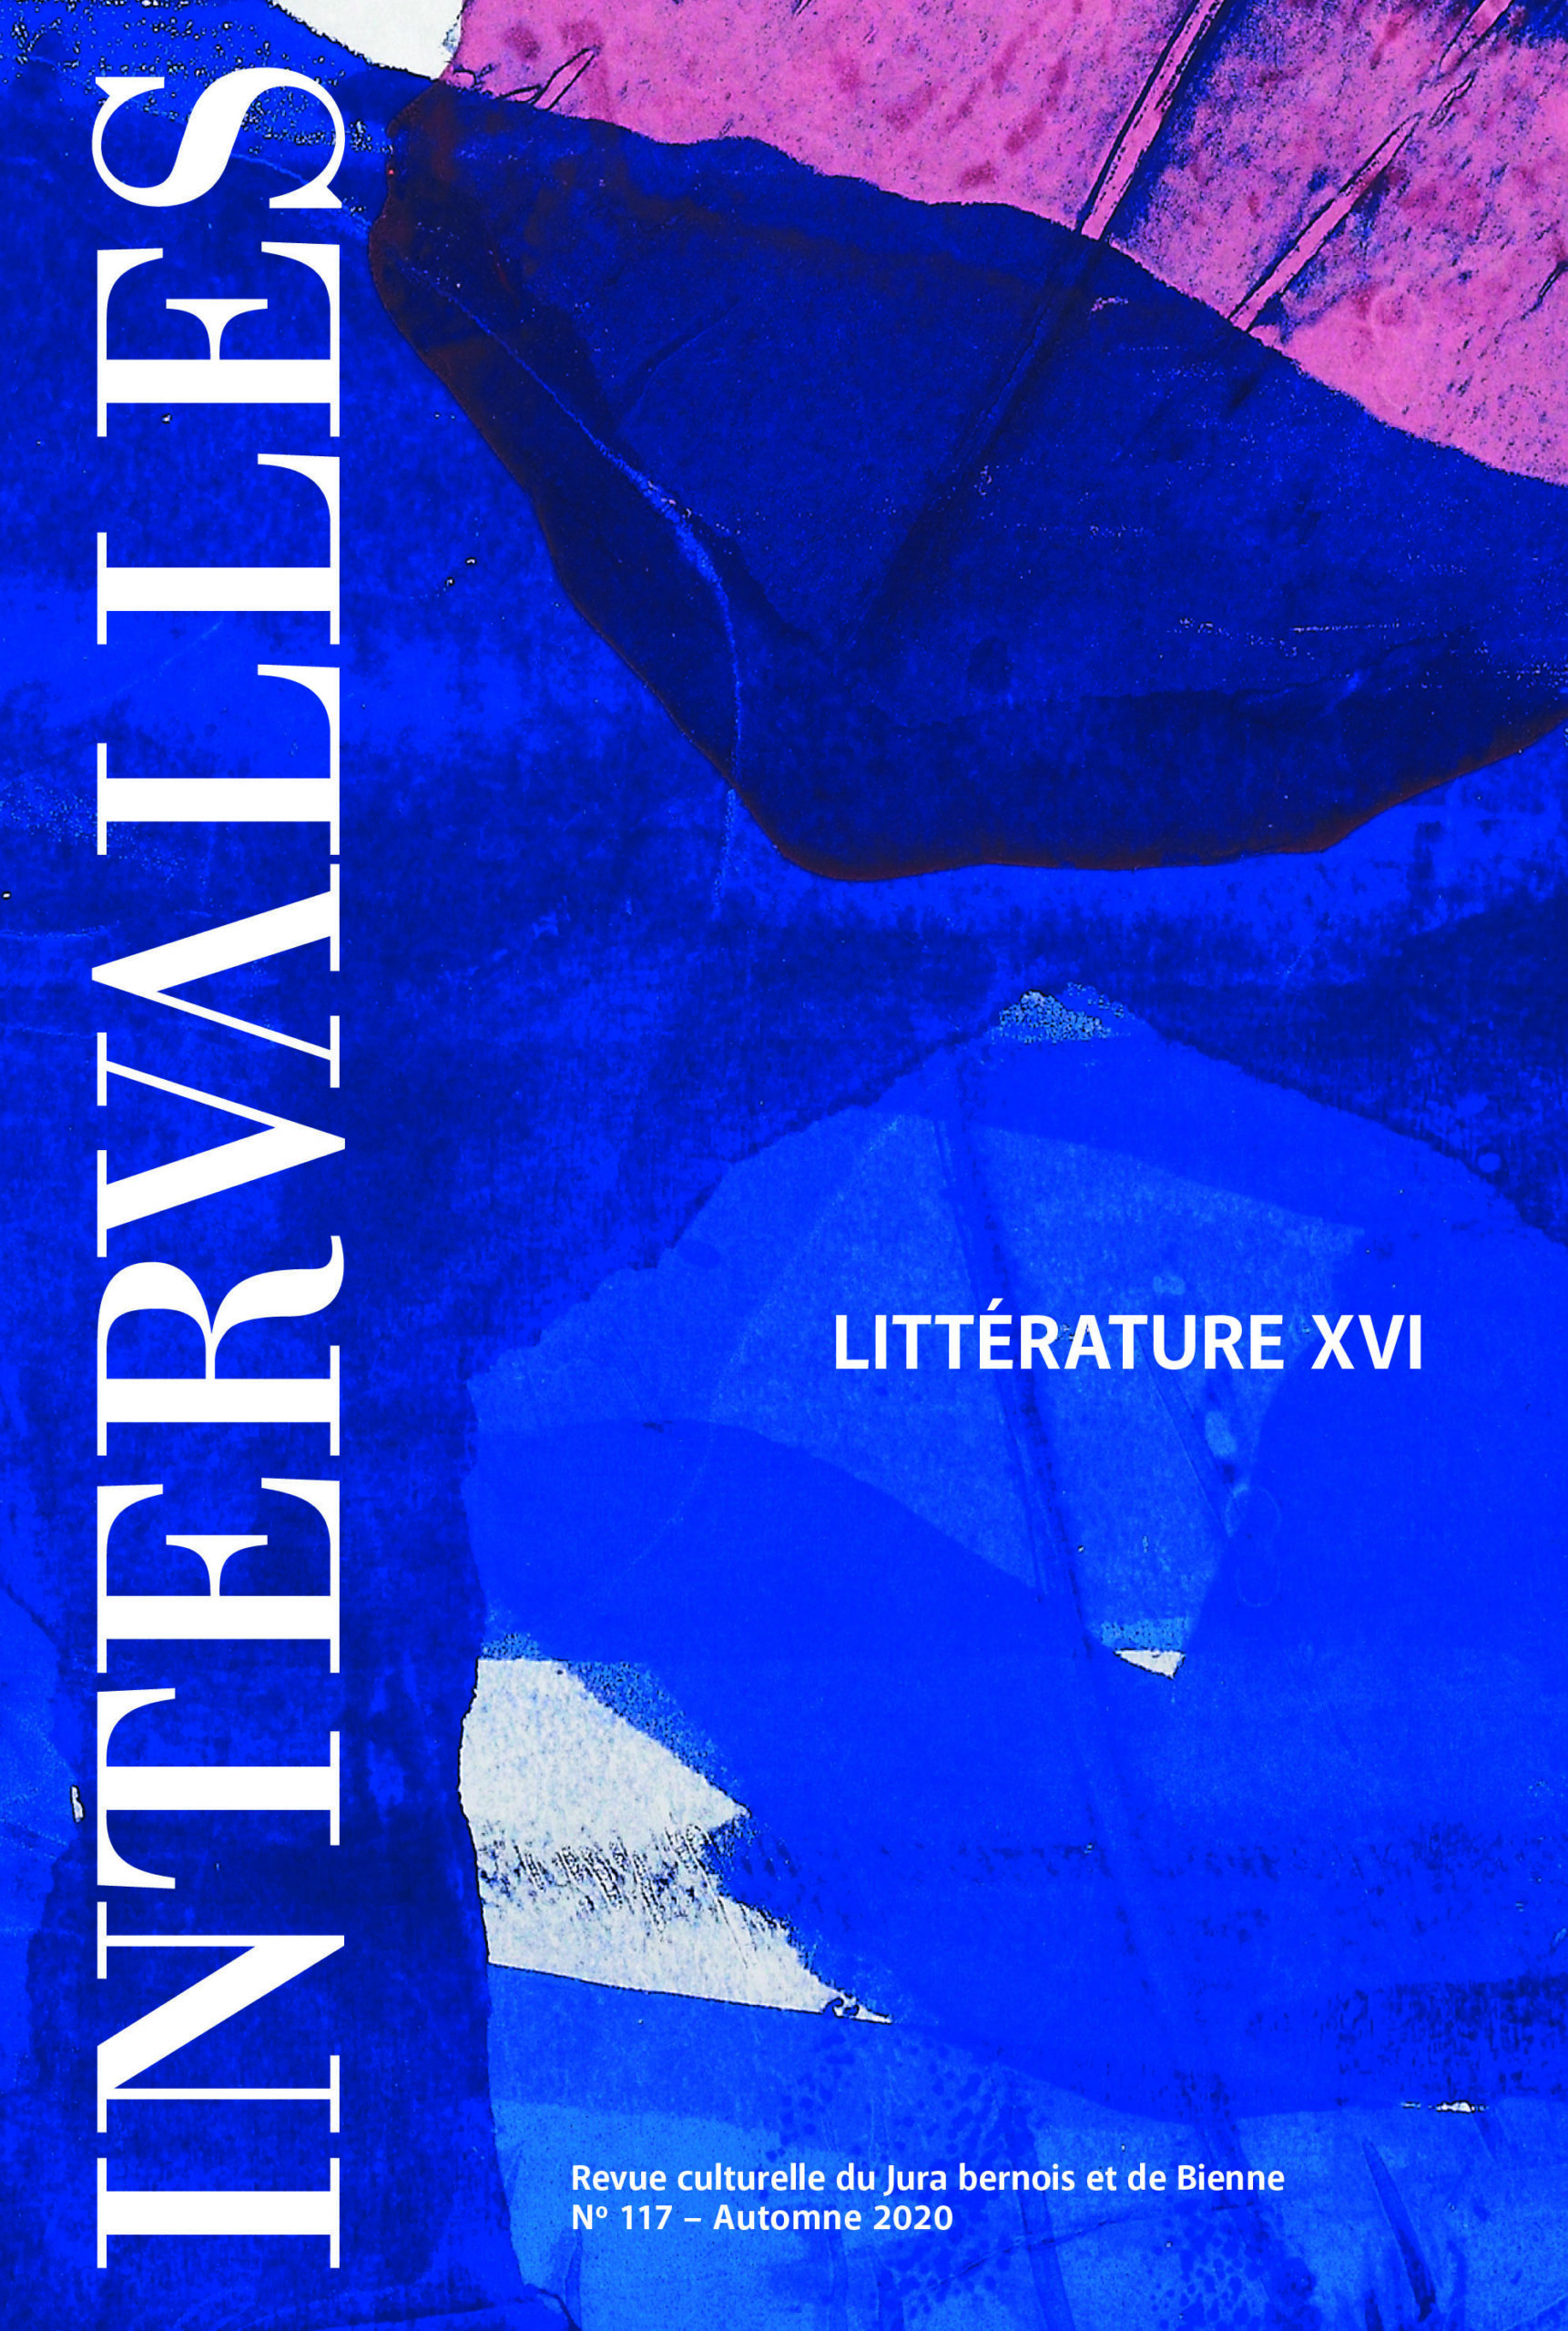 No 117 – Littérature XVI